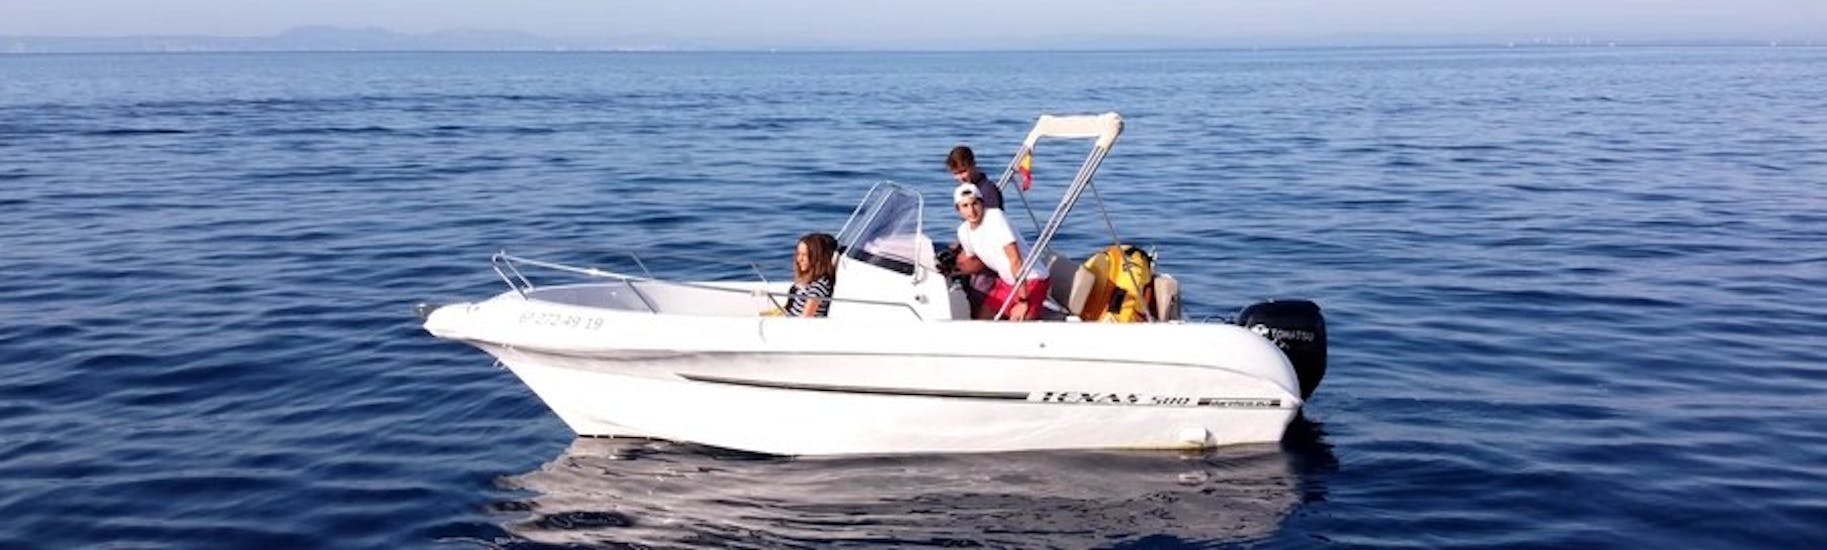 De moderne TEXAS 580 motorboot met een groep deelnemers die plezier hebben tijdens het varen op het turquoise water van de rozenbaai tijdens een bootverhuur in Costa Brava voor maximaal 6 personen met vaarbewijs bij Maxi Boats.